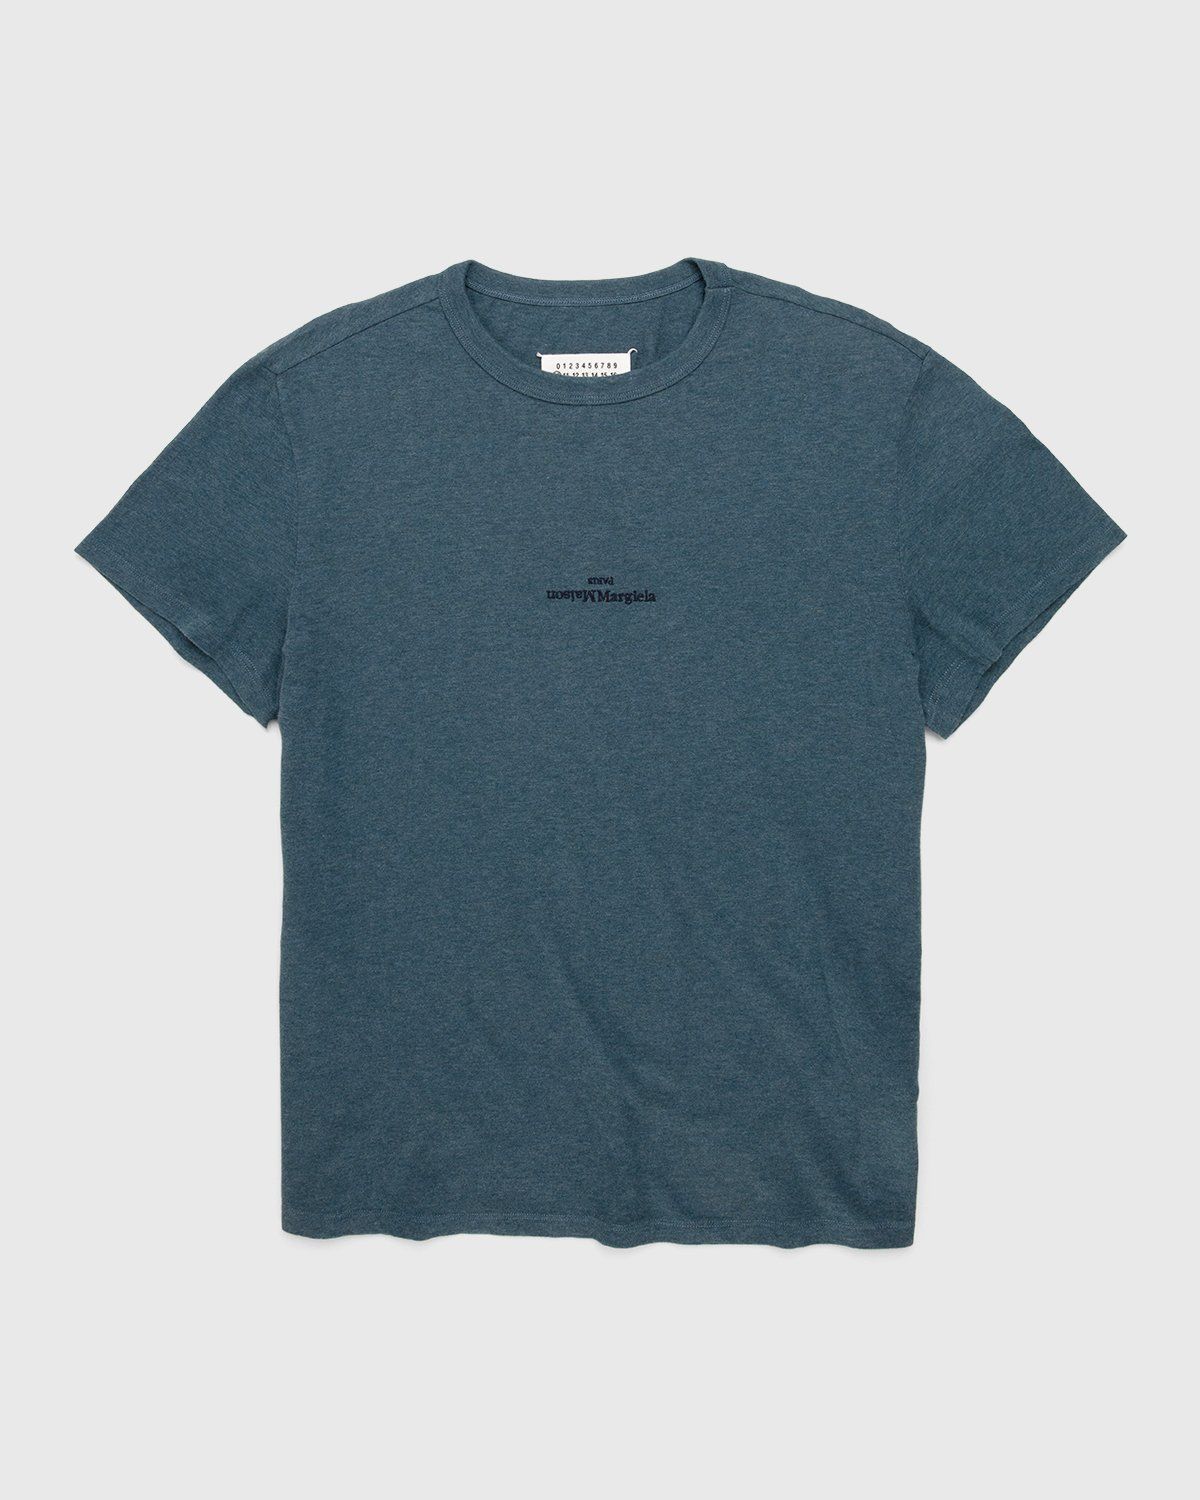 Maison Margiela – Logo T-Shirt Blue - T-Shirts - Blue - Image 1